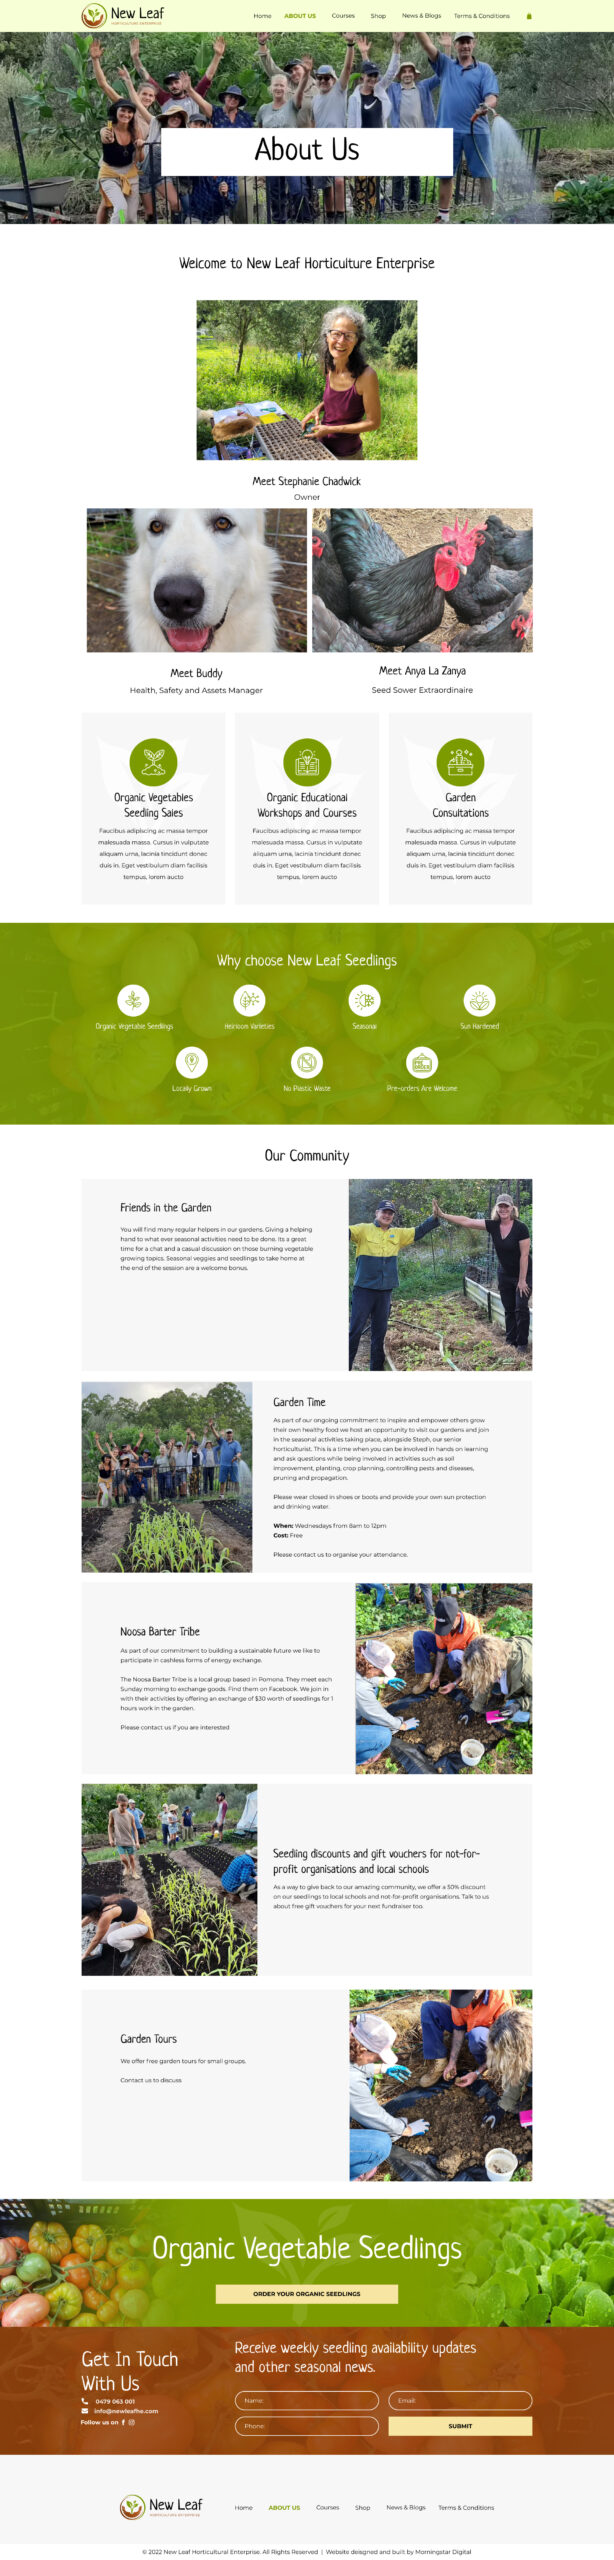 New Leaf Horticultural Enterprise About Us